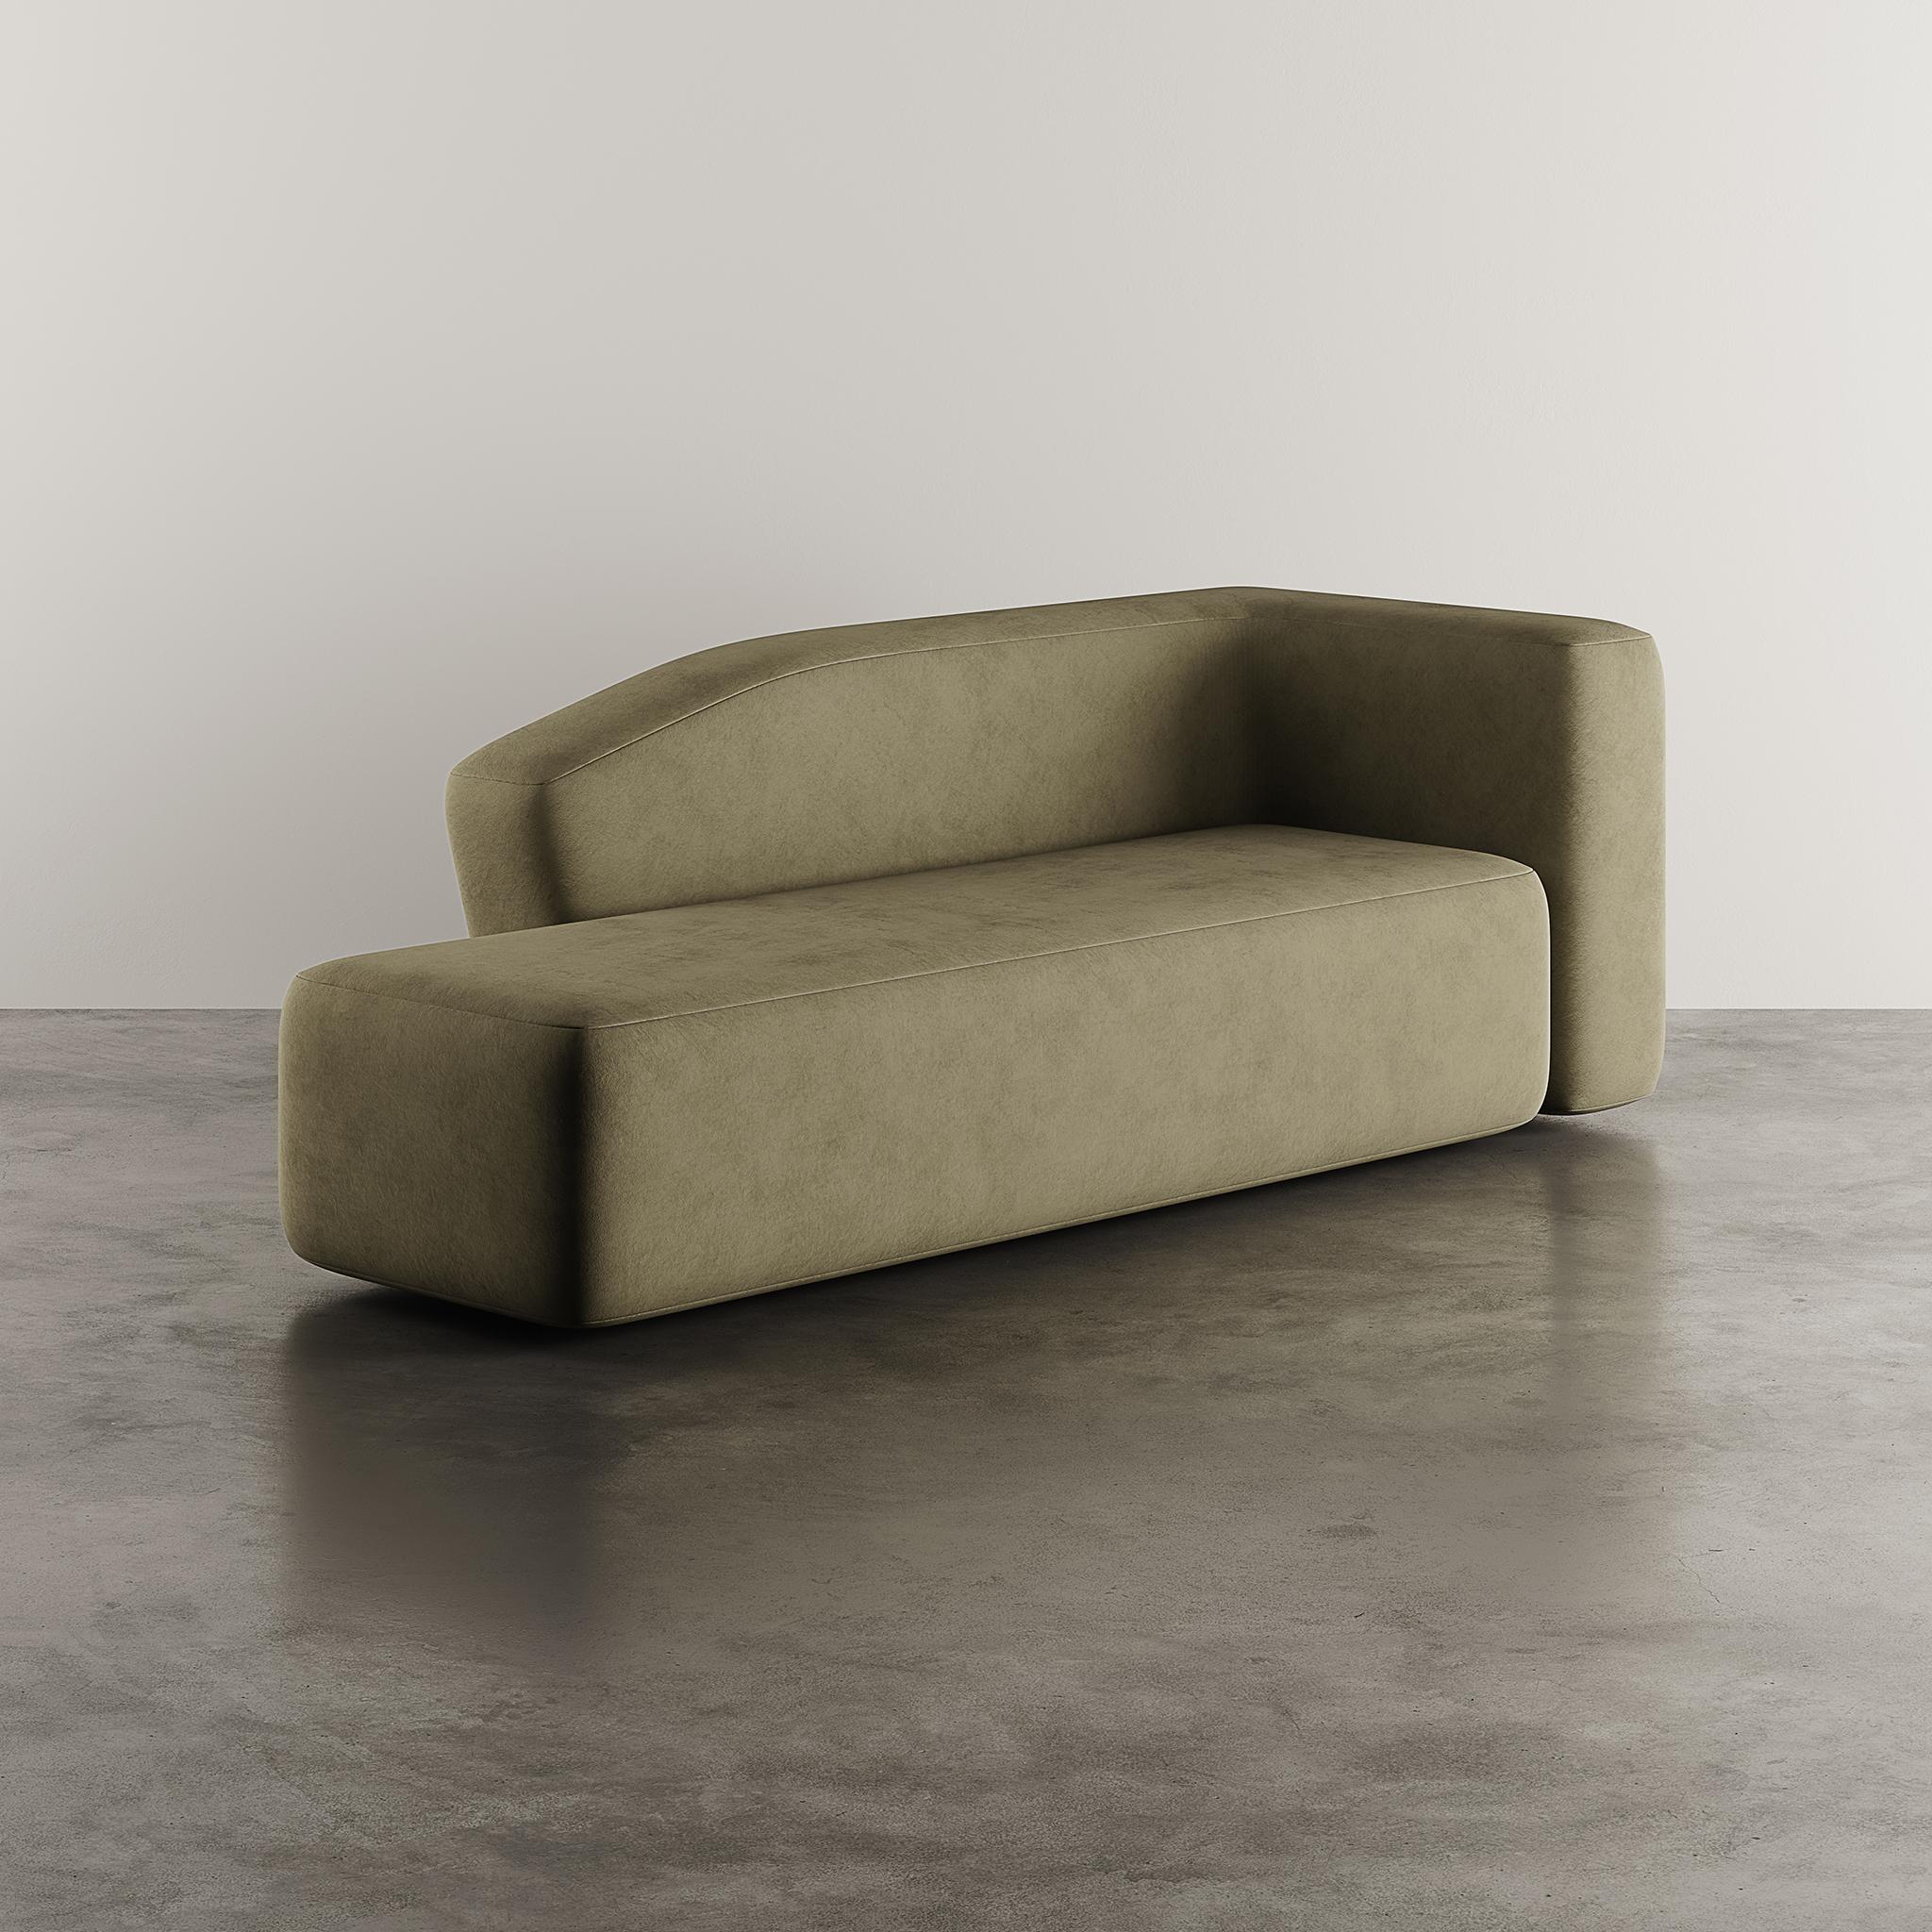 La Chaise Longue West Suede est un témoignage du mariage du confort et du style dans le domaine du mobilier d'intérieur.
Fabriquée avec précision et un grand sens du design, cette chaise longue offre non seulement une expérience de détente